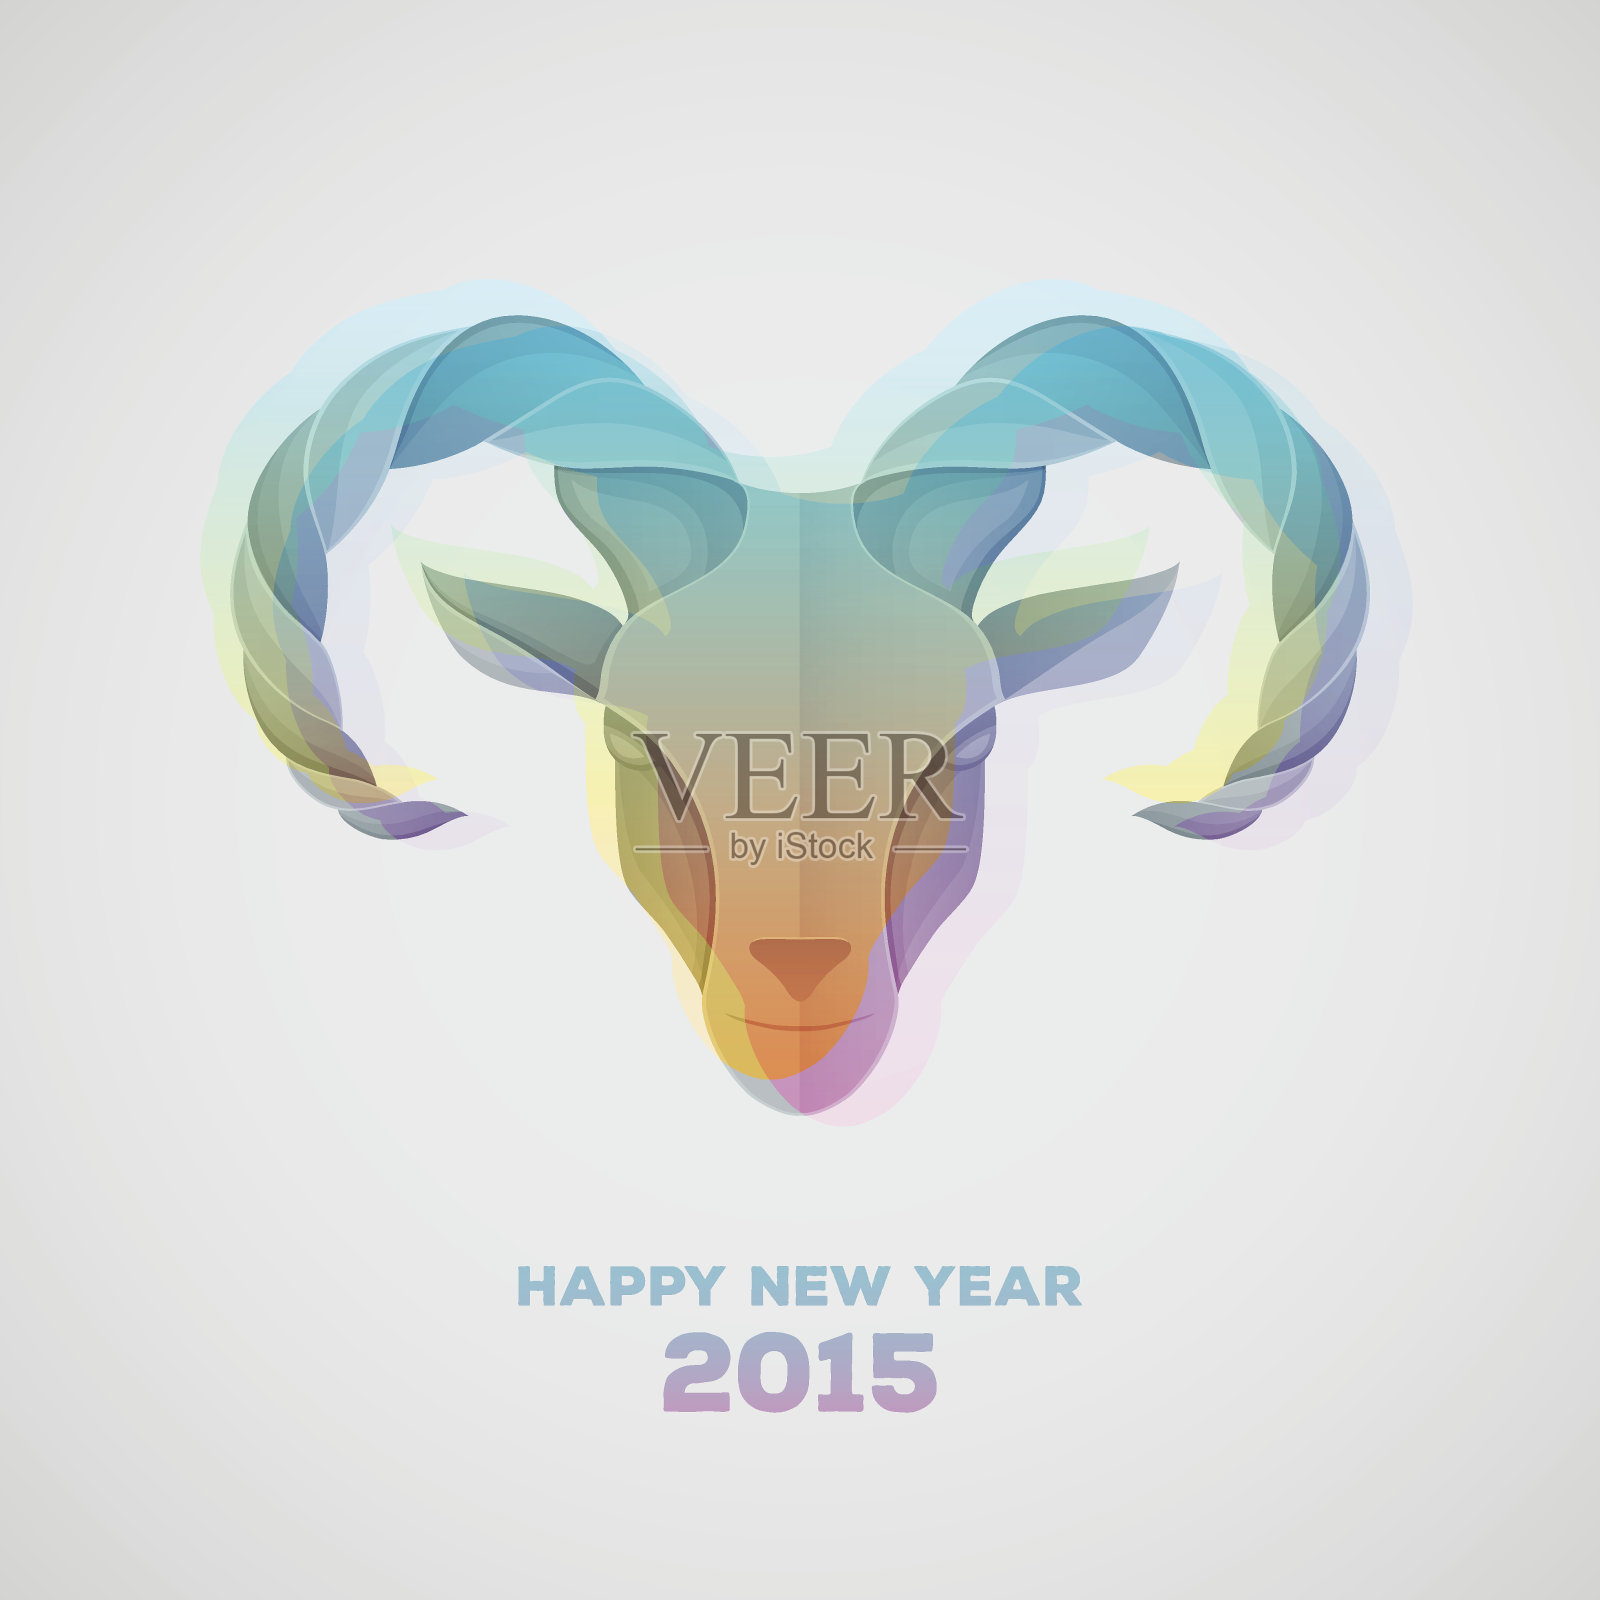 山羊是2015年的象征插画图片素材